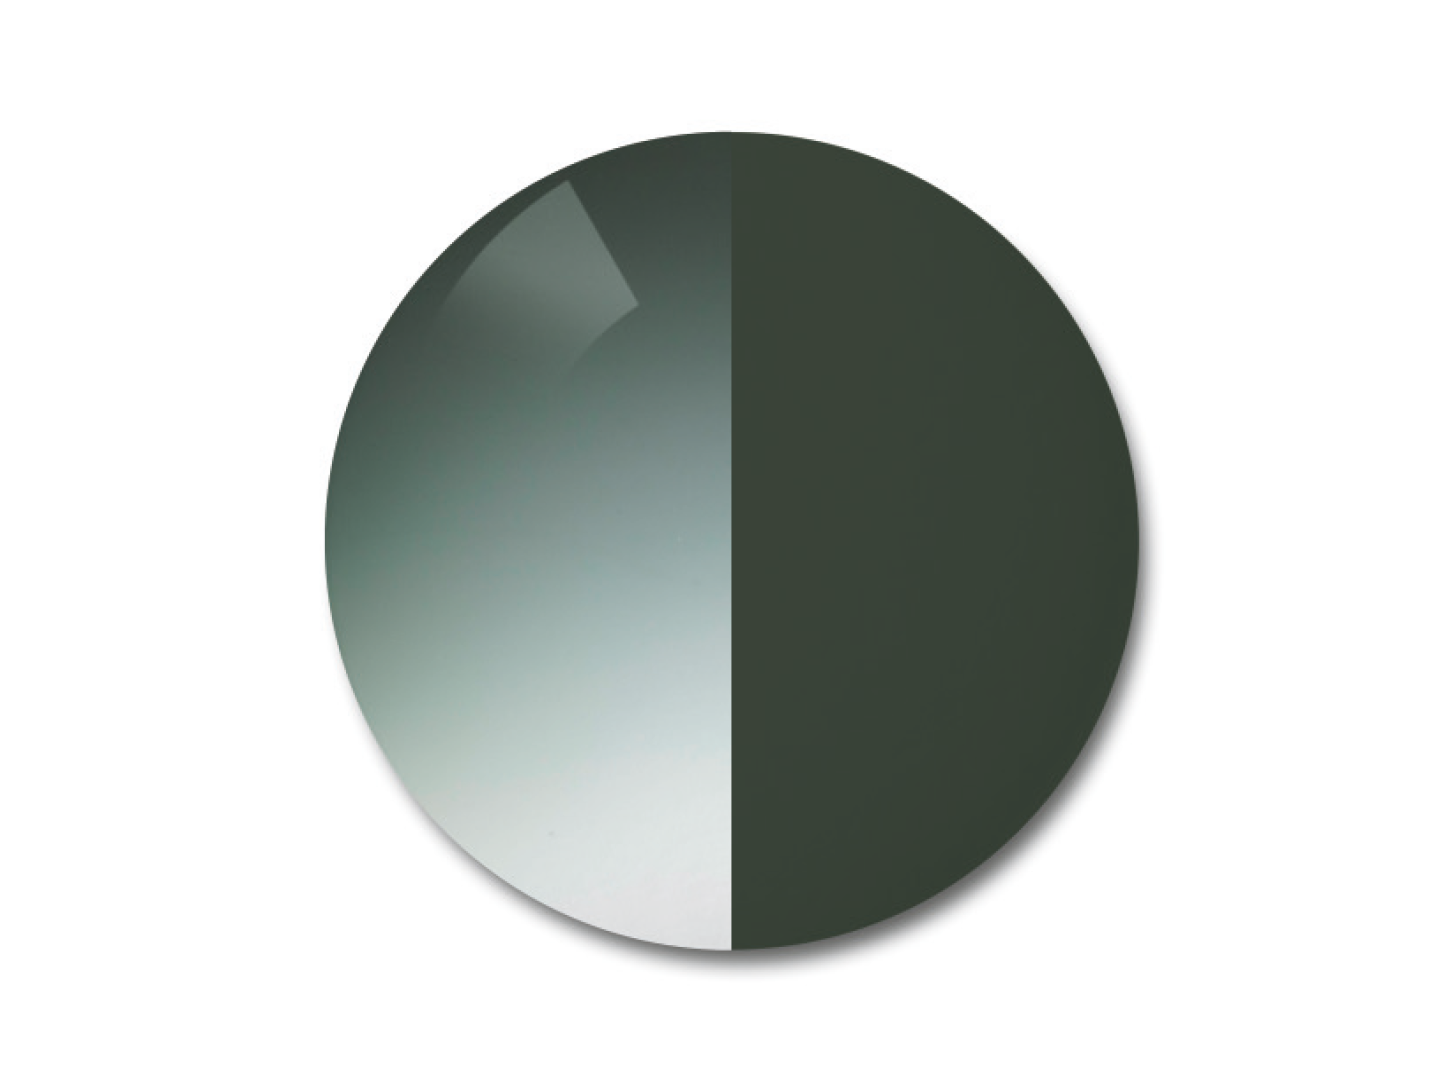 자이스 어댑티브선 변색 렌즈 중 그라데이션 파이오니아 색상을 보여주는 이미지 